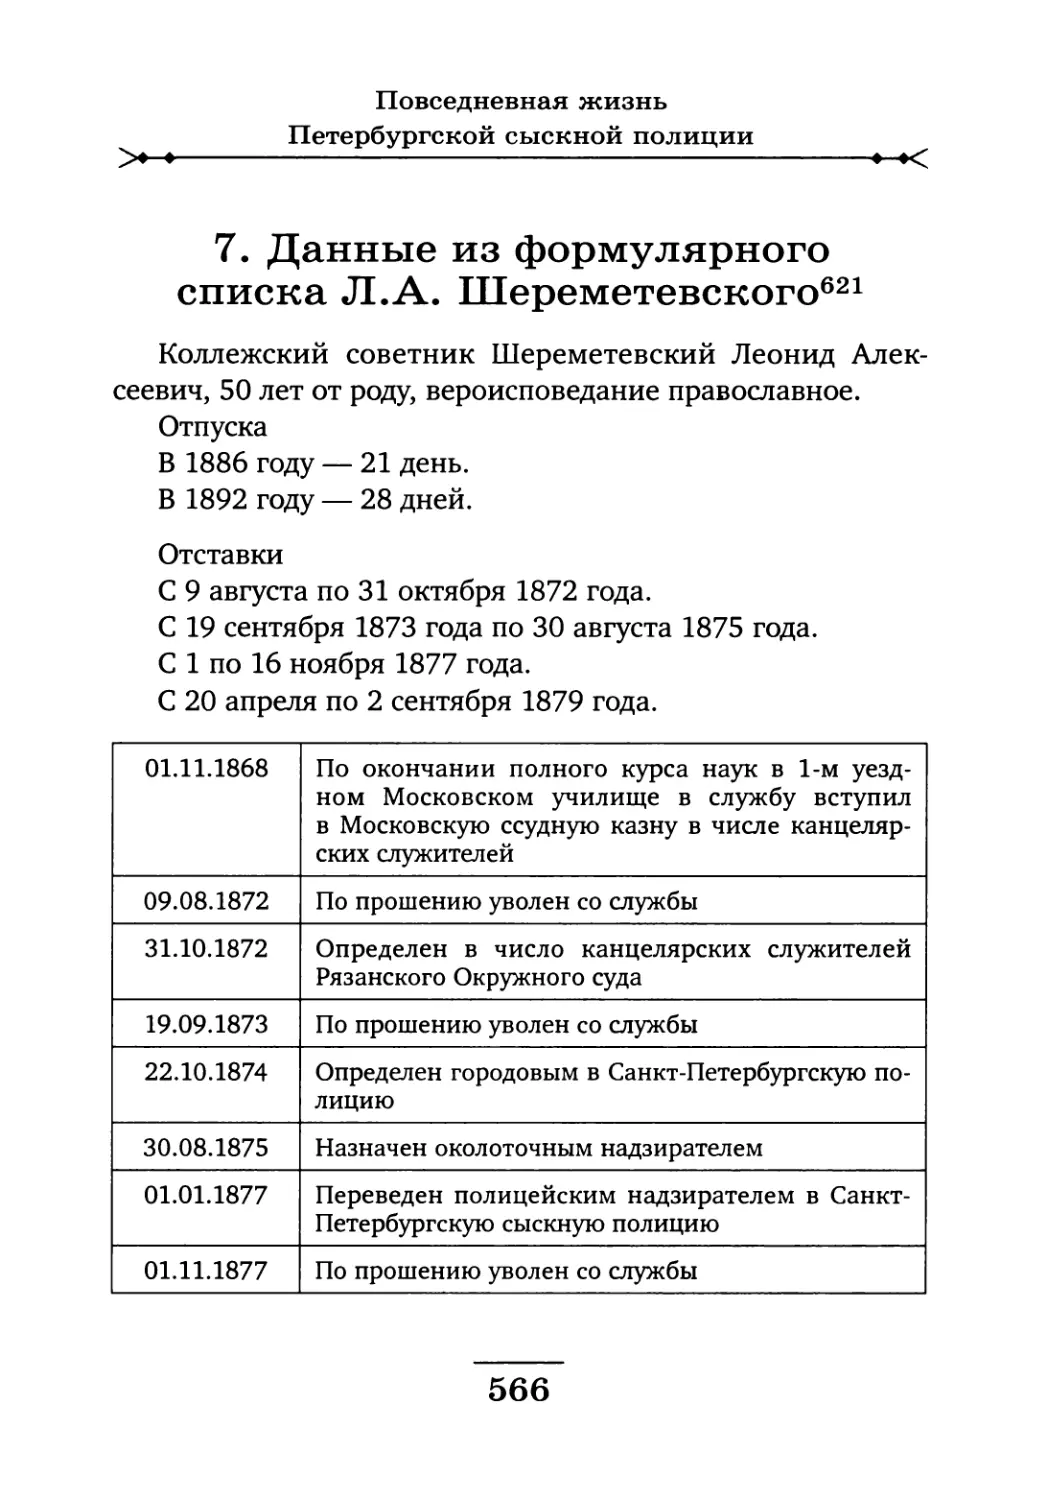 7. Данные из формулярного списка Л.А. Шереметевского